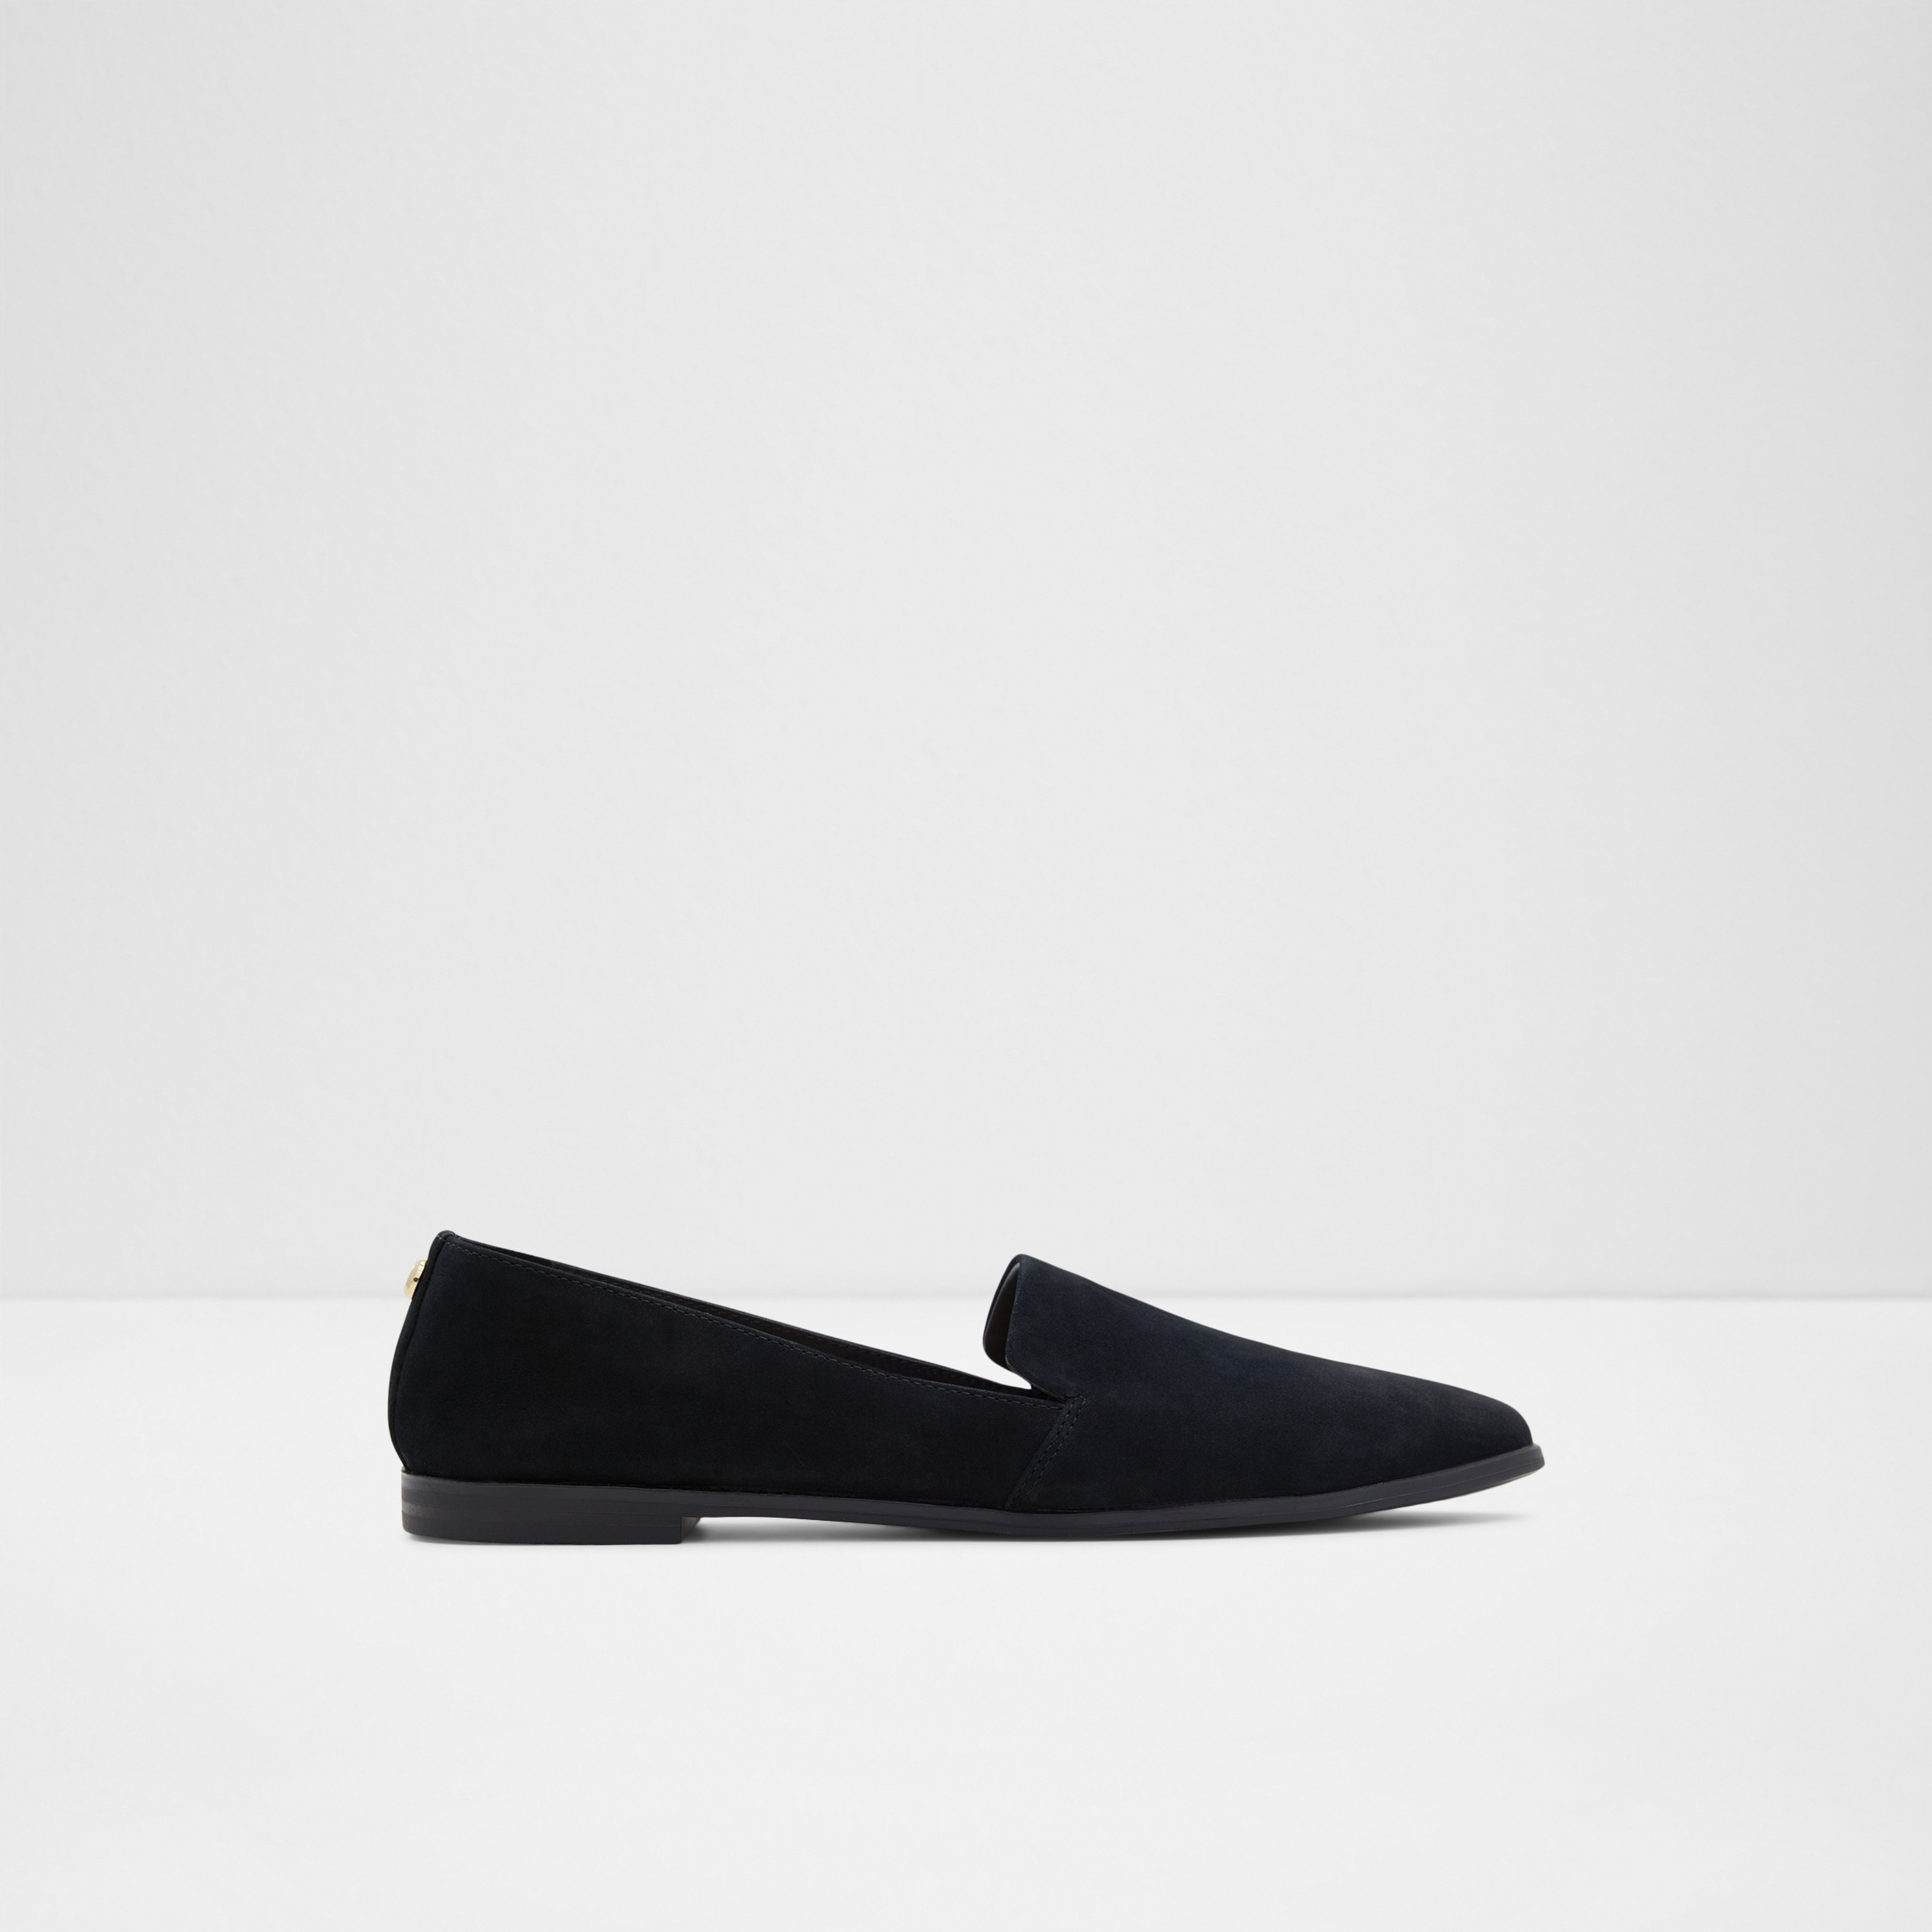 Aldo Shoes Caumeth-007-001-031 - Women